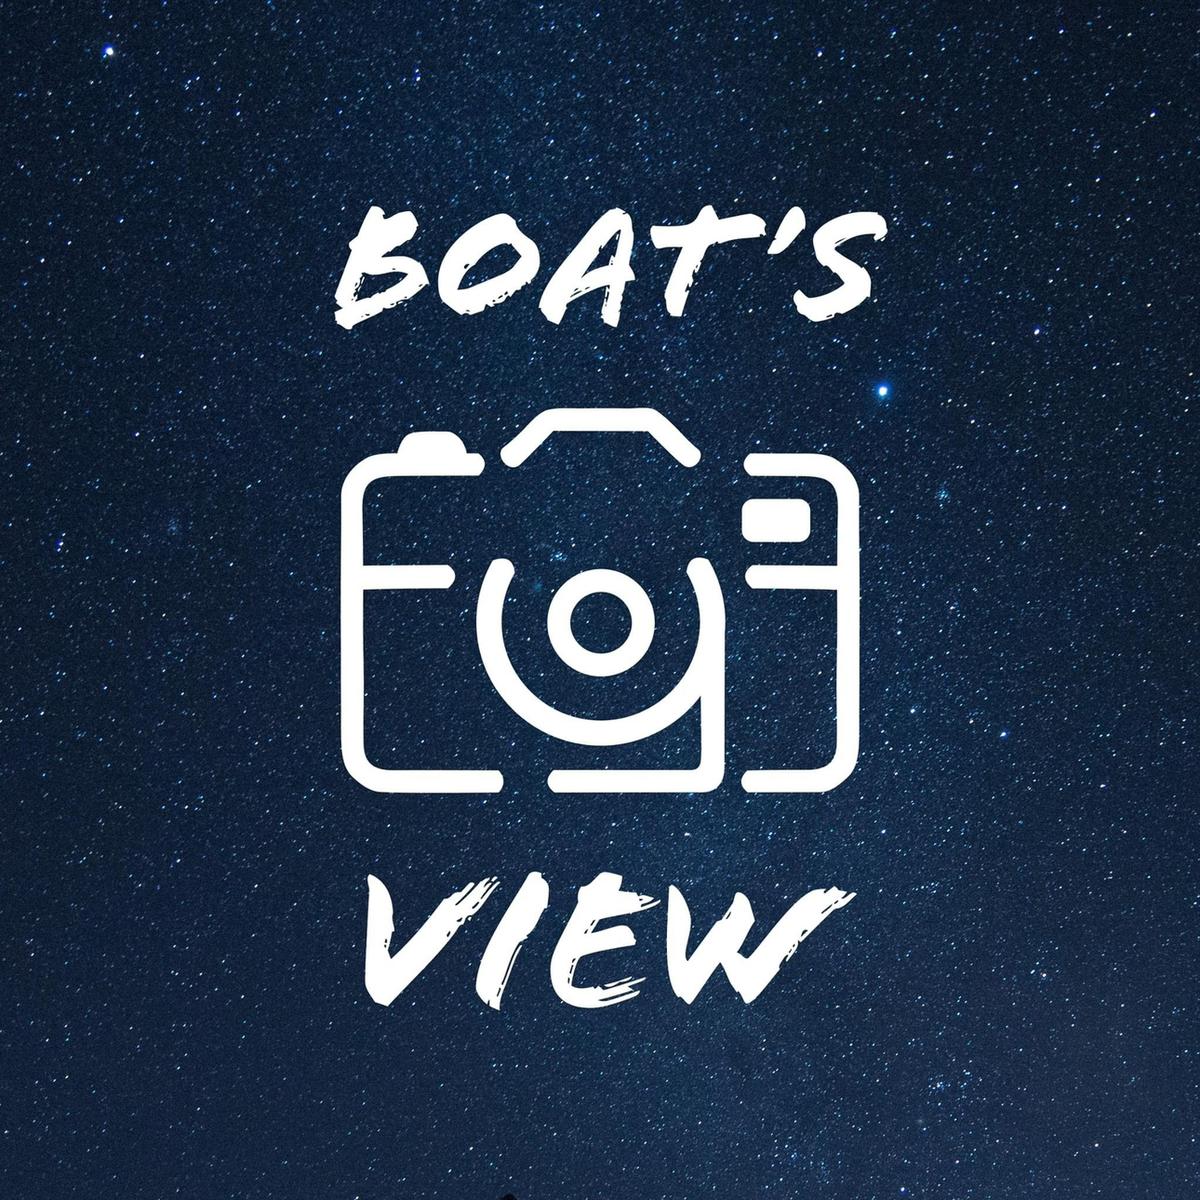 รูปภาพของ Boat’s eye view